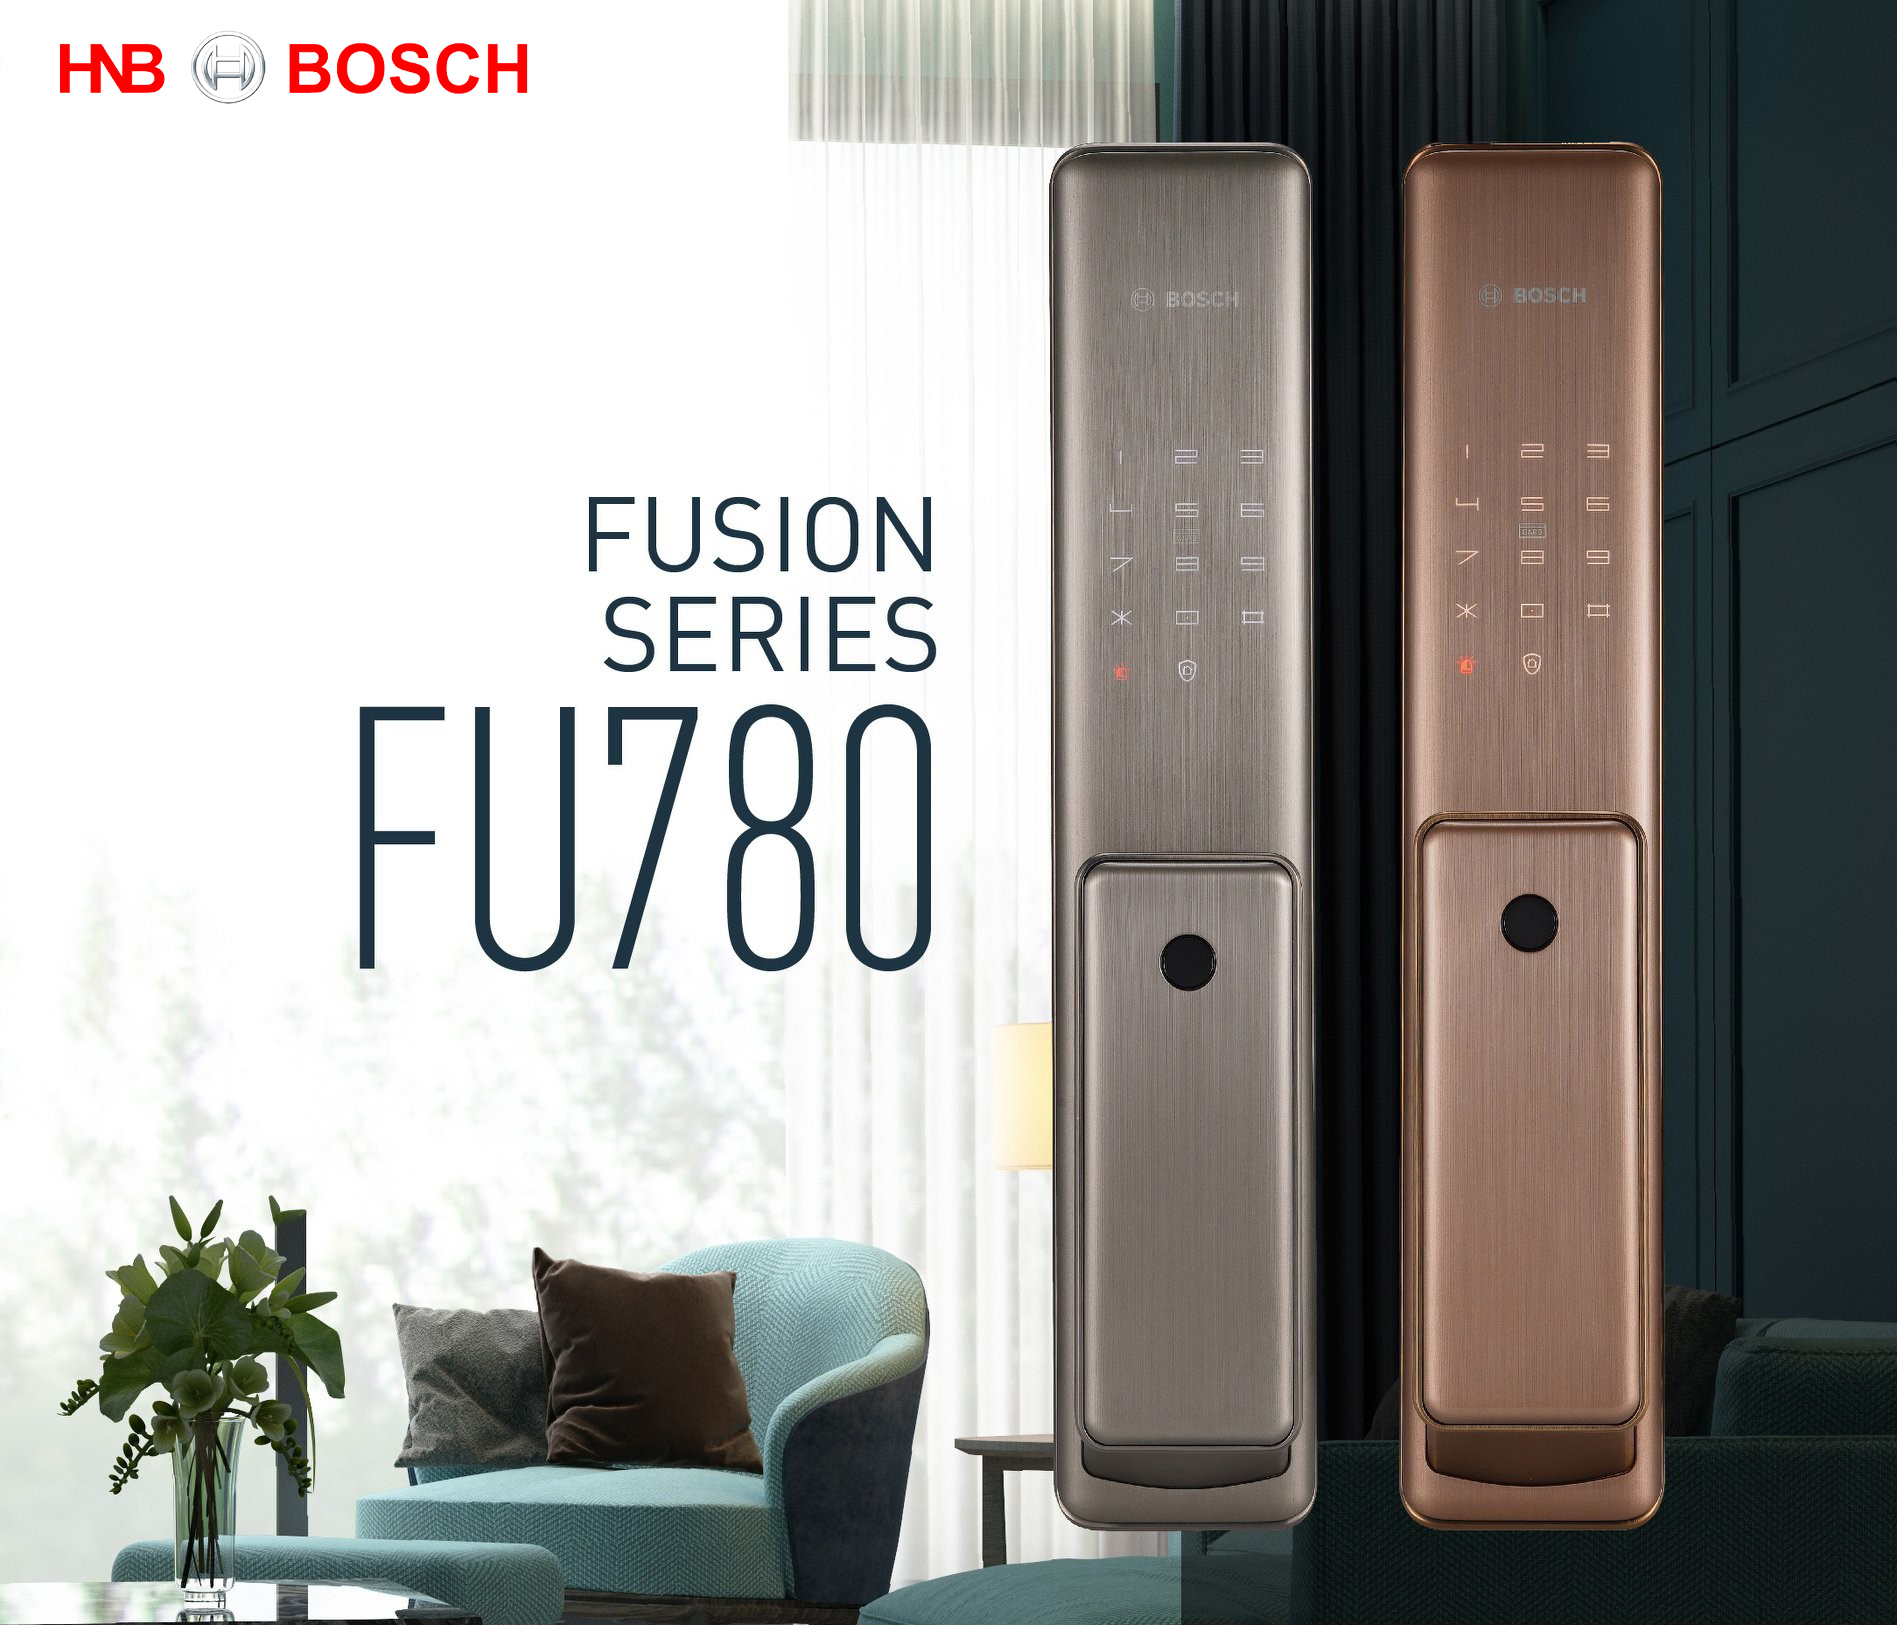 Khóa Bosch FU780 giá ưu đãi 20% tại Hanoibuild